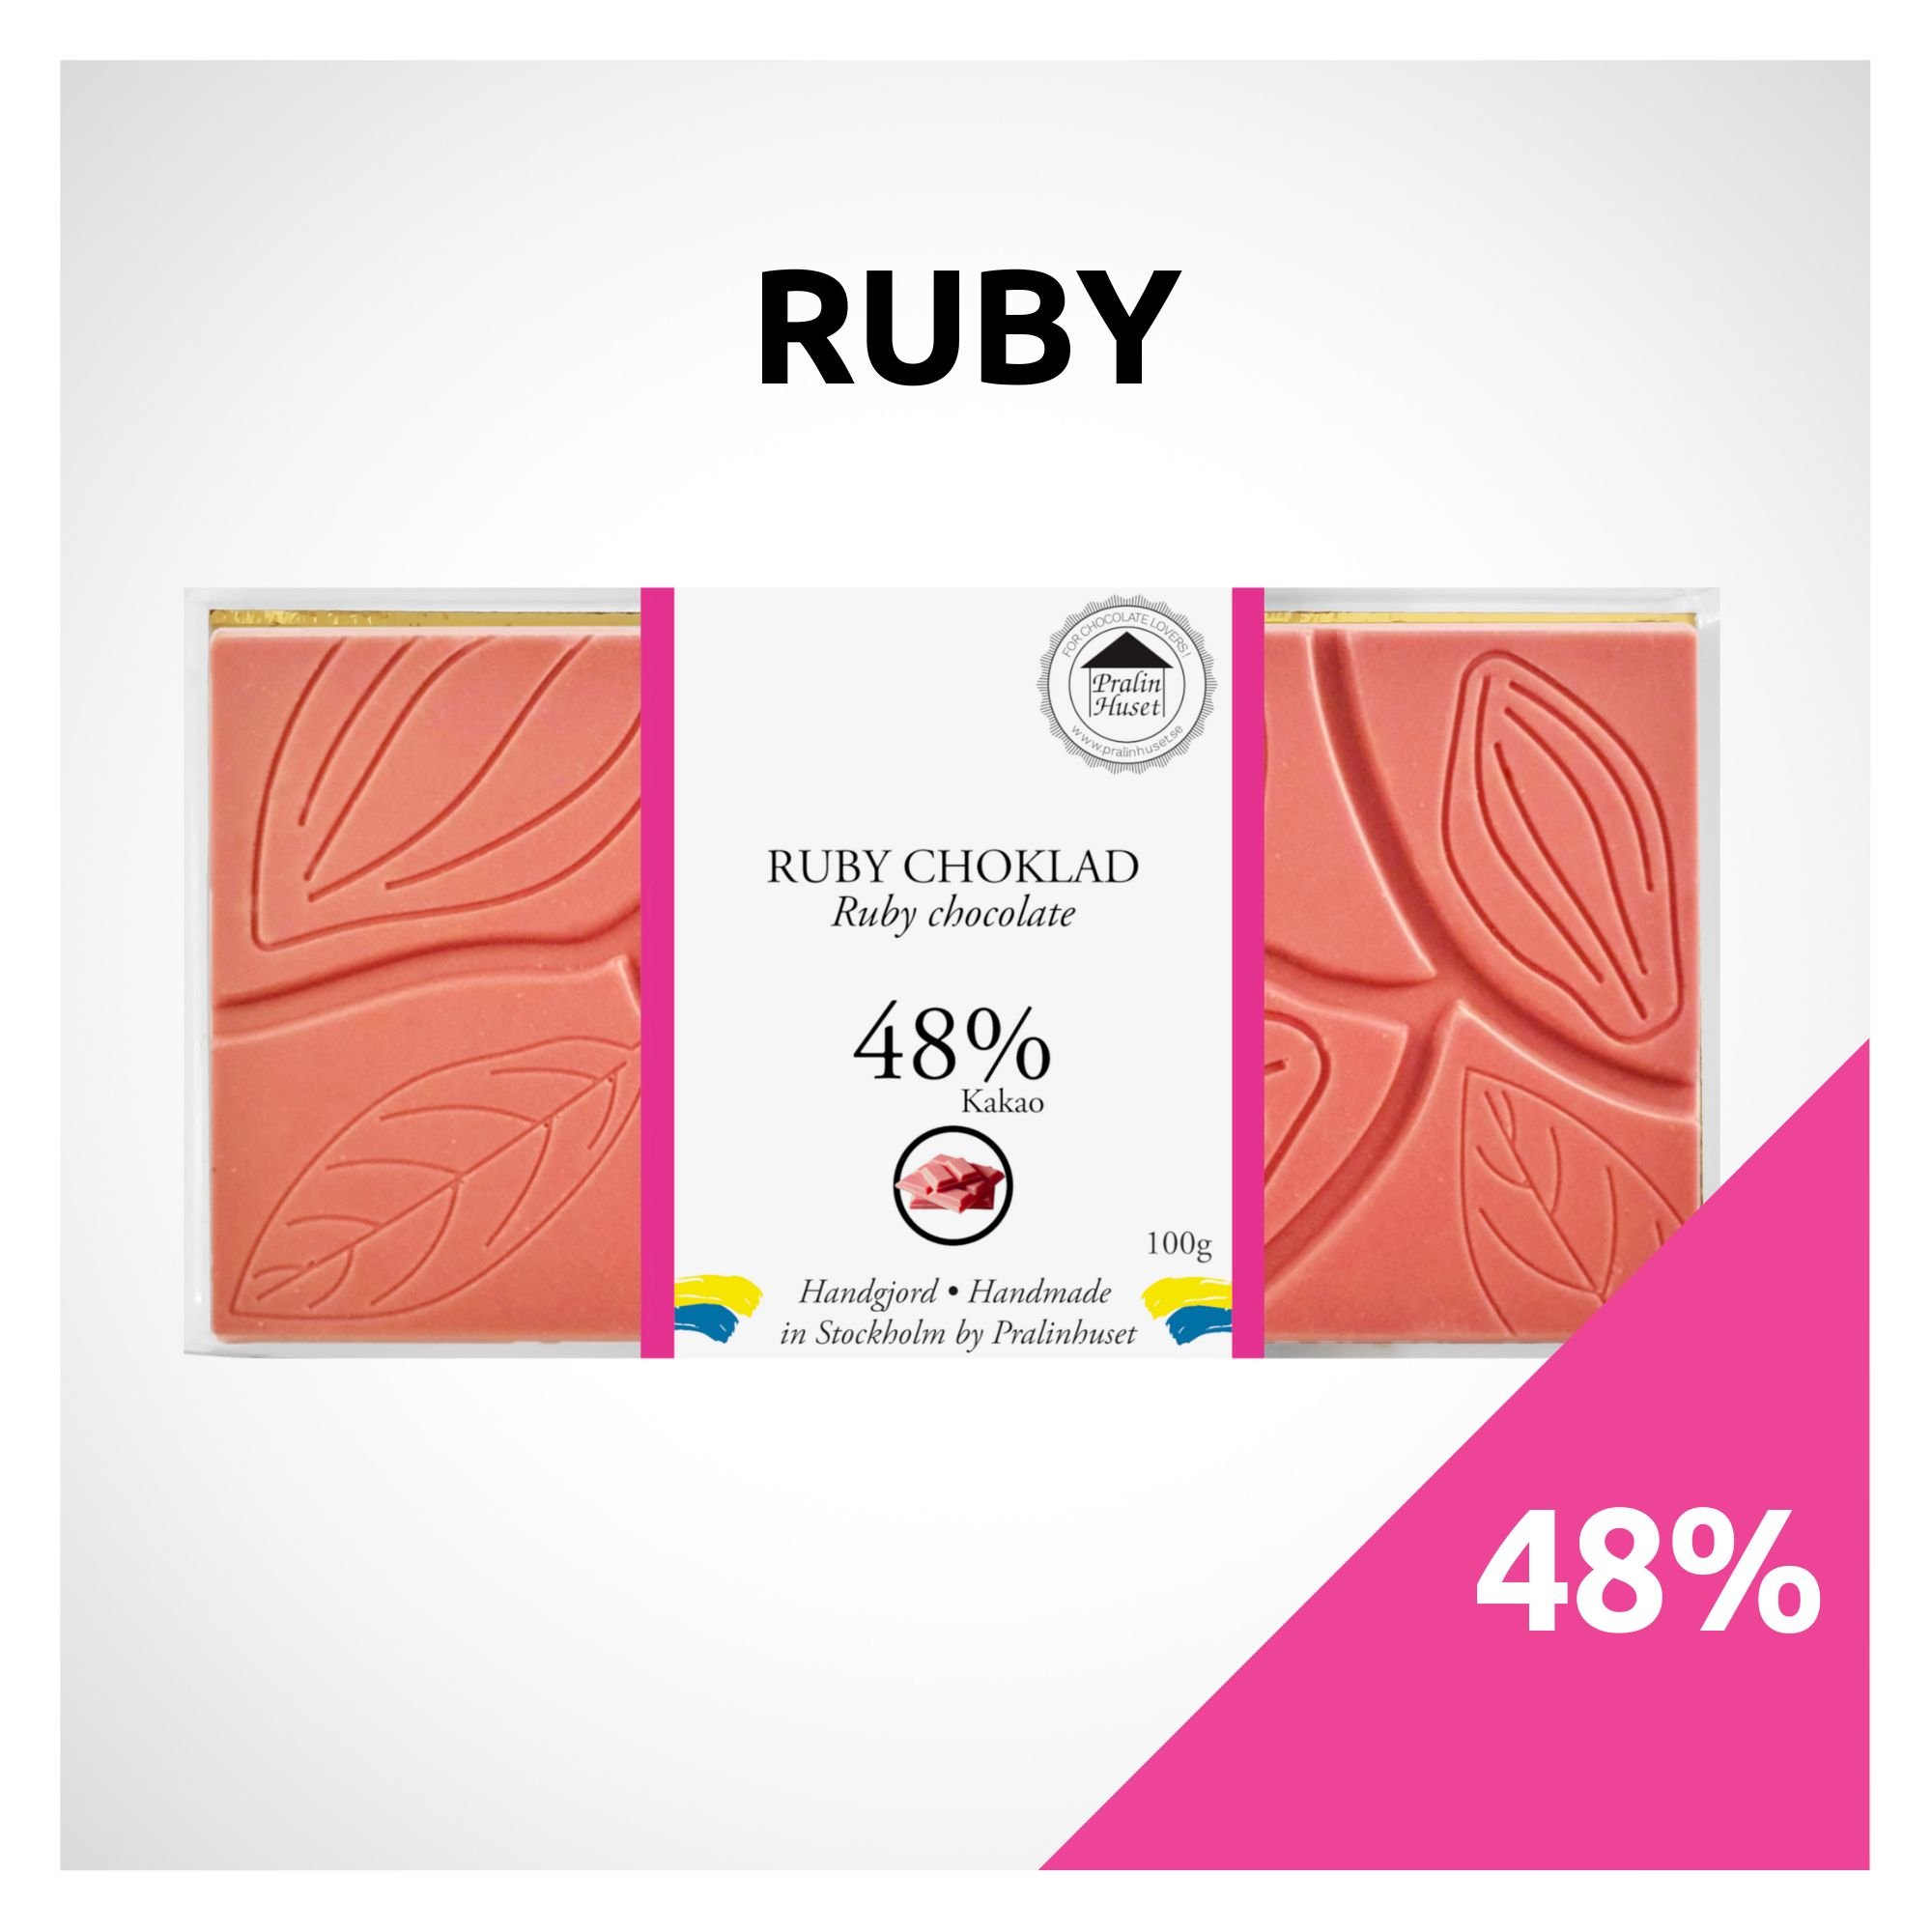 RUBY - PralinHuset Återförsäljare